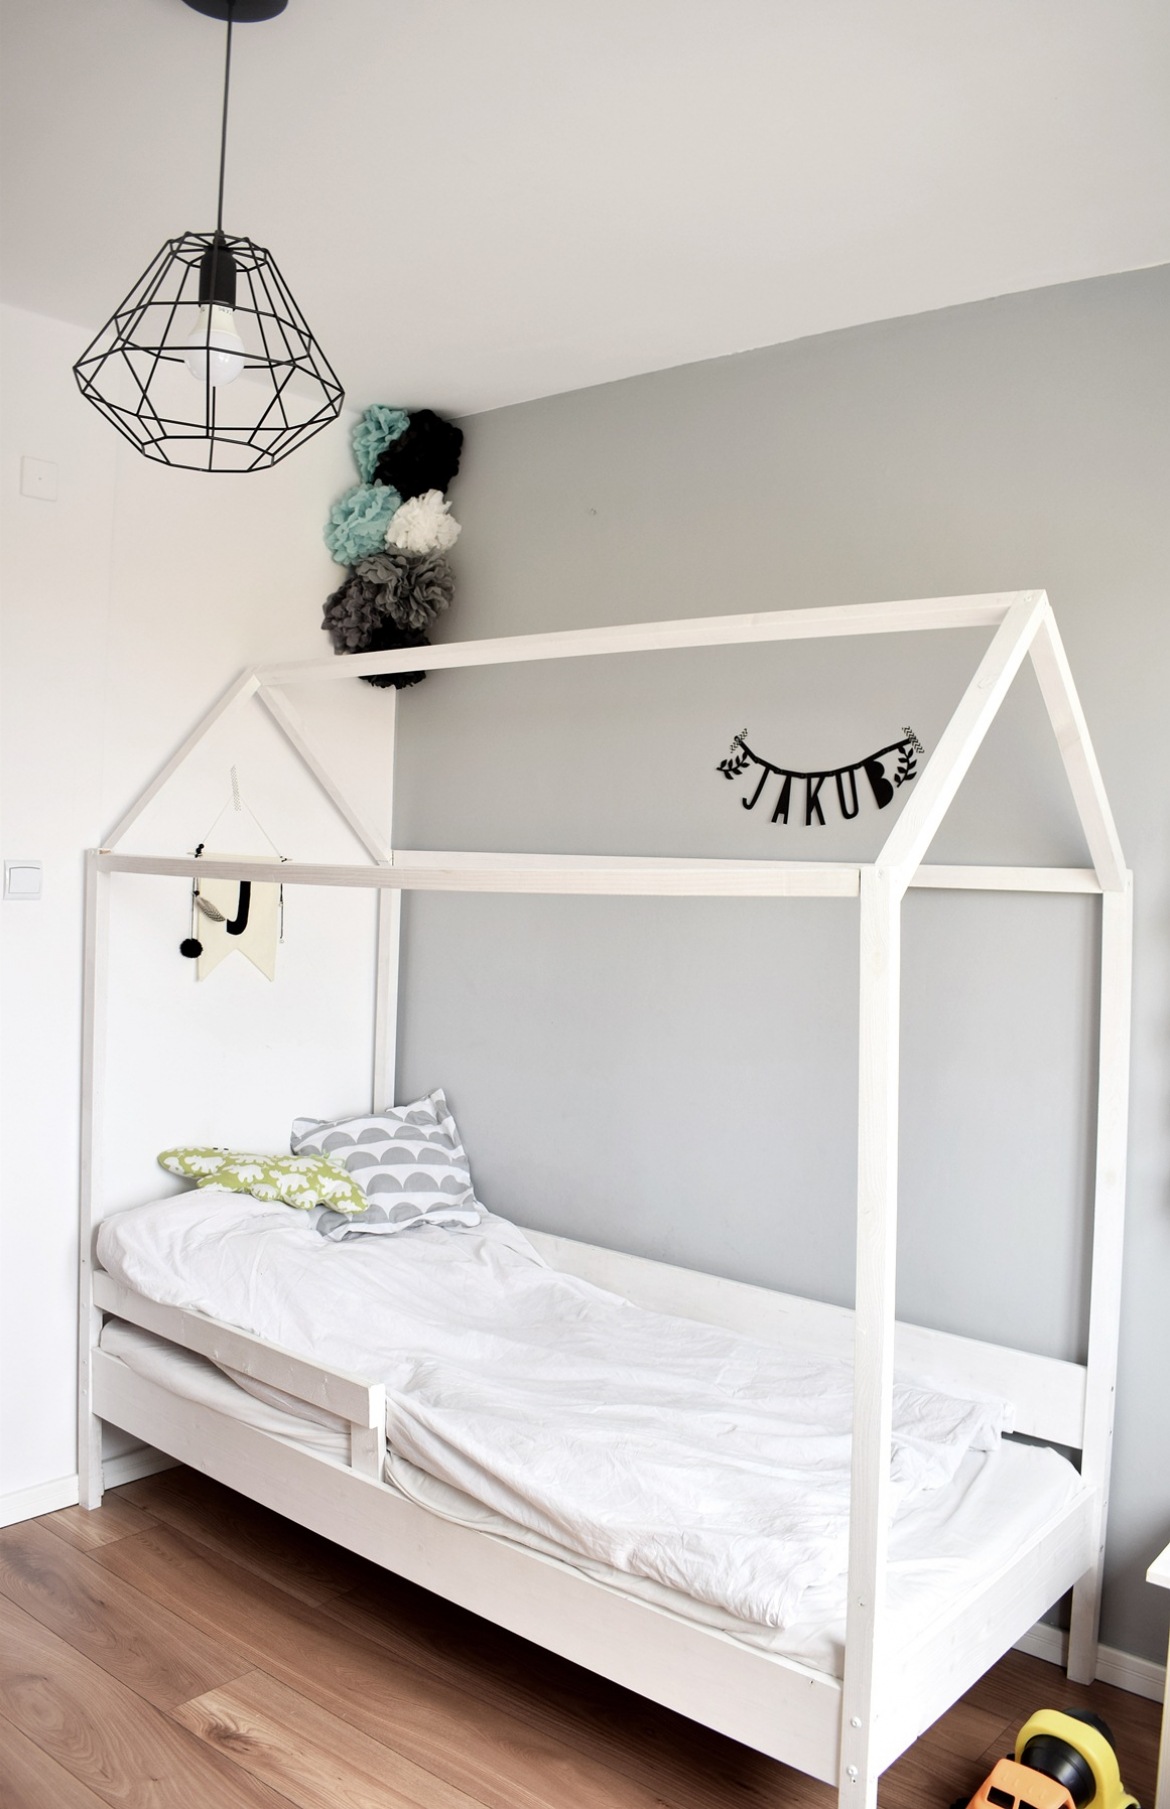 Łóżko w kształcie domku w pokoju dziecięcym (51324)